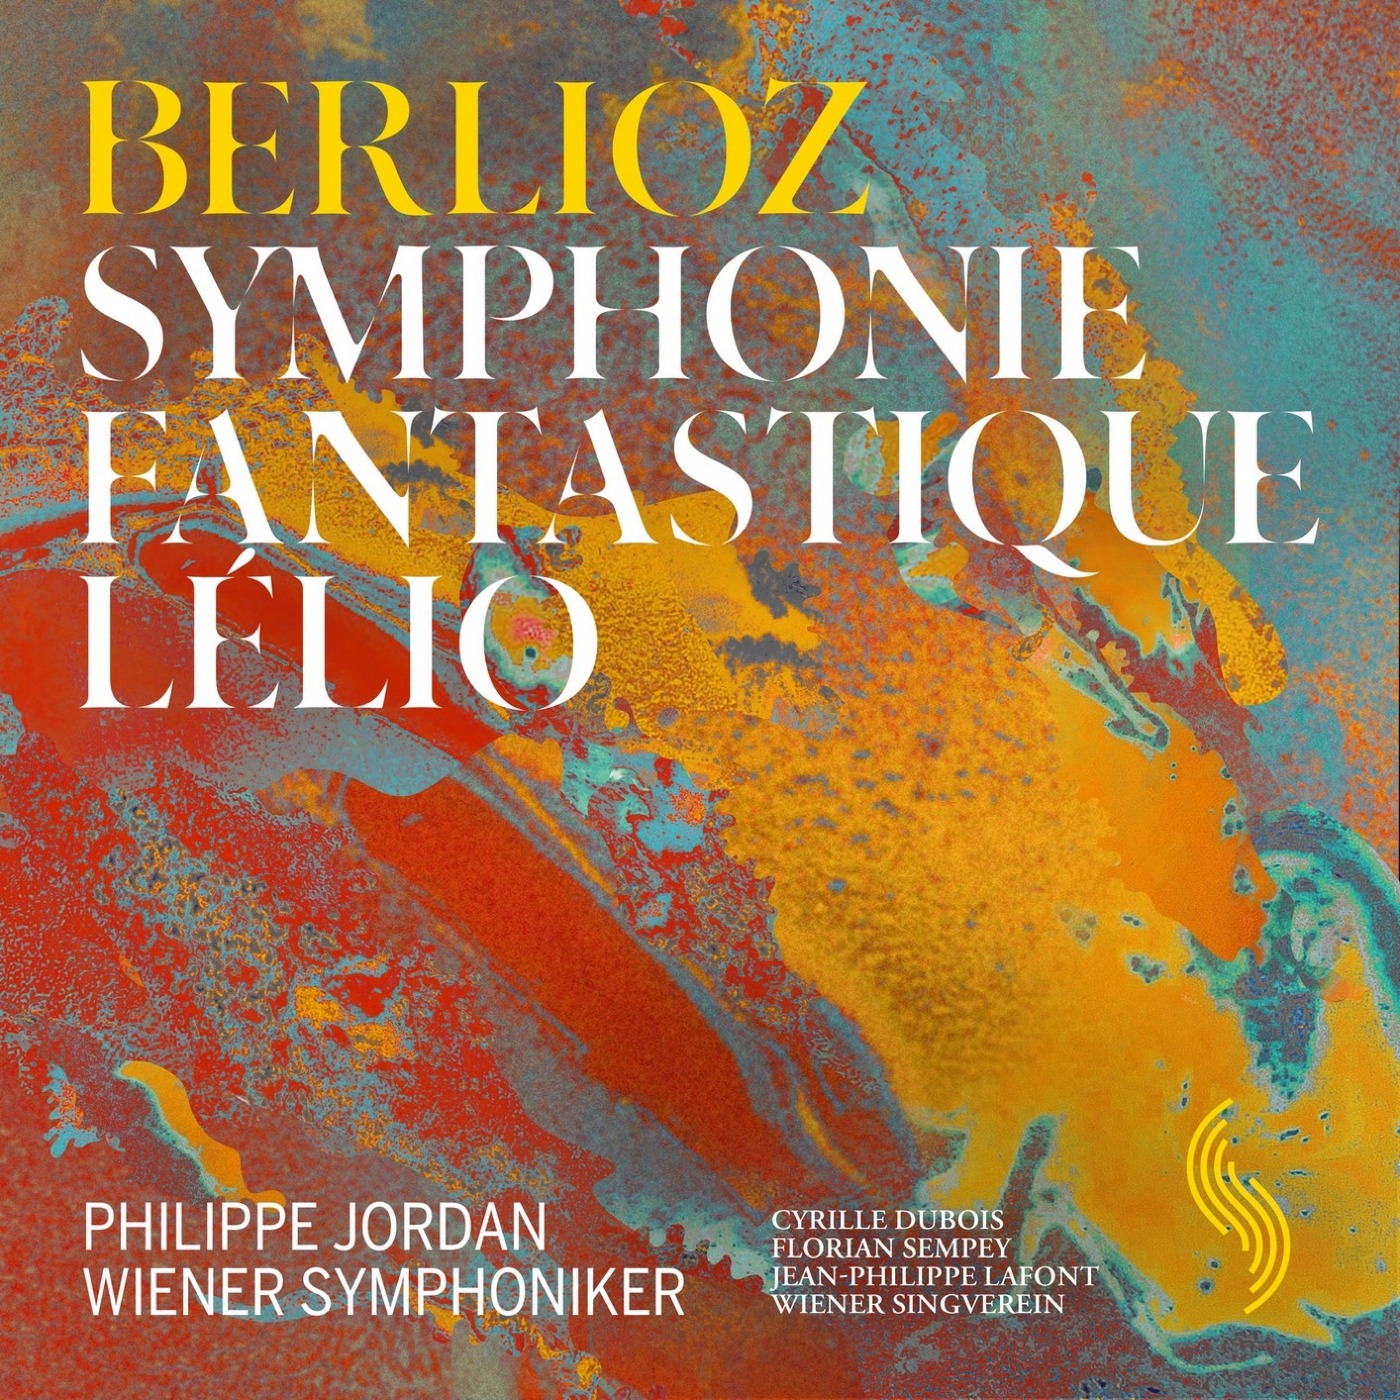 Philippe Jordan, Cyrille Dubois, Wiener Symphoniker – Berlioz: Symphonie fantastique & Lelio (2019) [FLAC 24bit/96kHz]